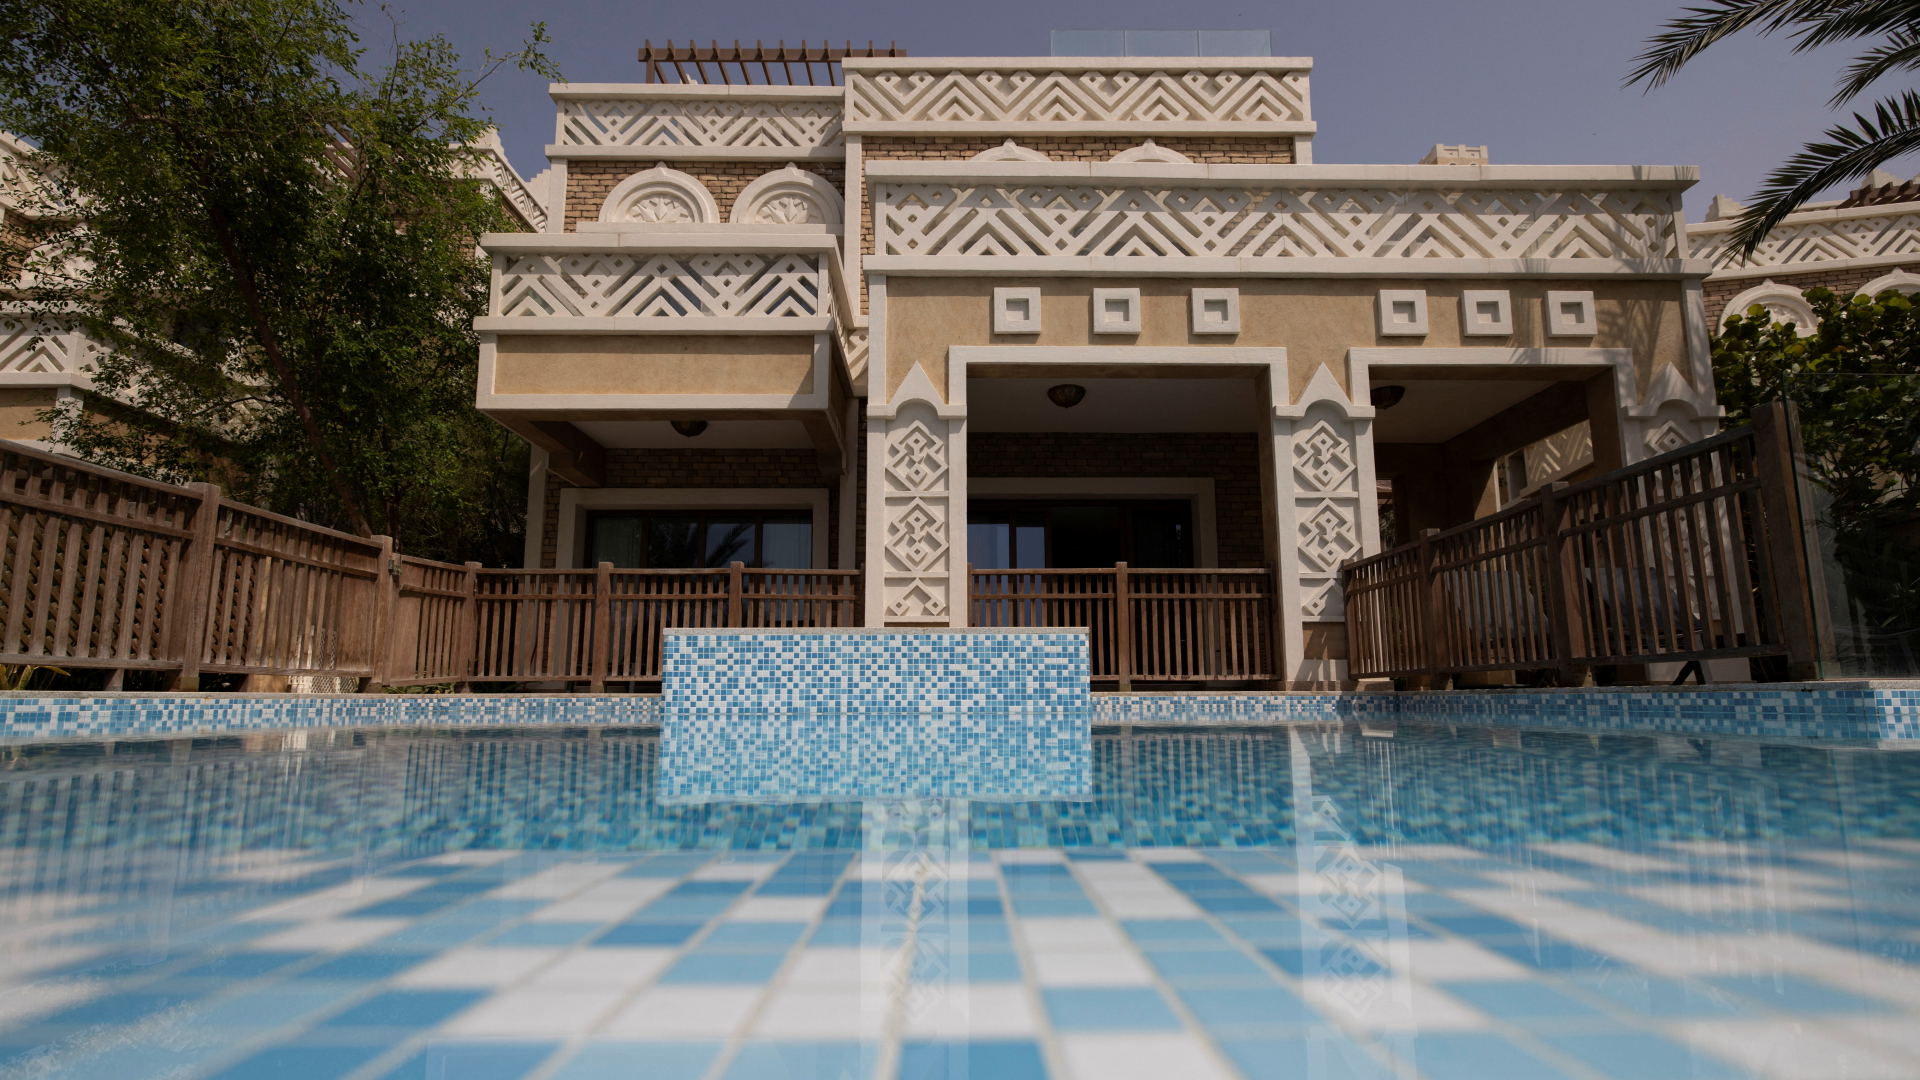 Villa auf der künstlichen Insel Palm Jumeirah auf Dubai (Vereinigte Arabische Emirate) | REUTERS